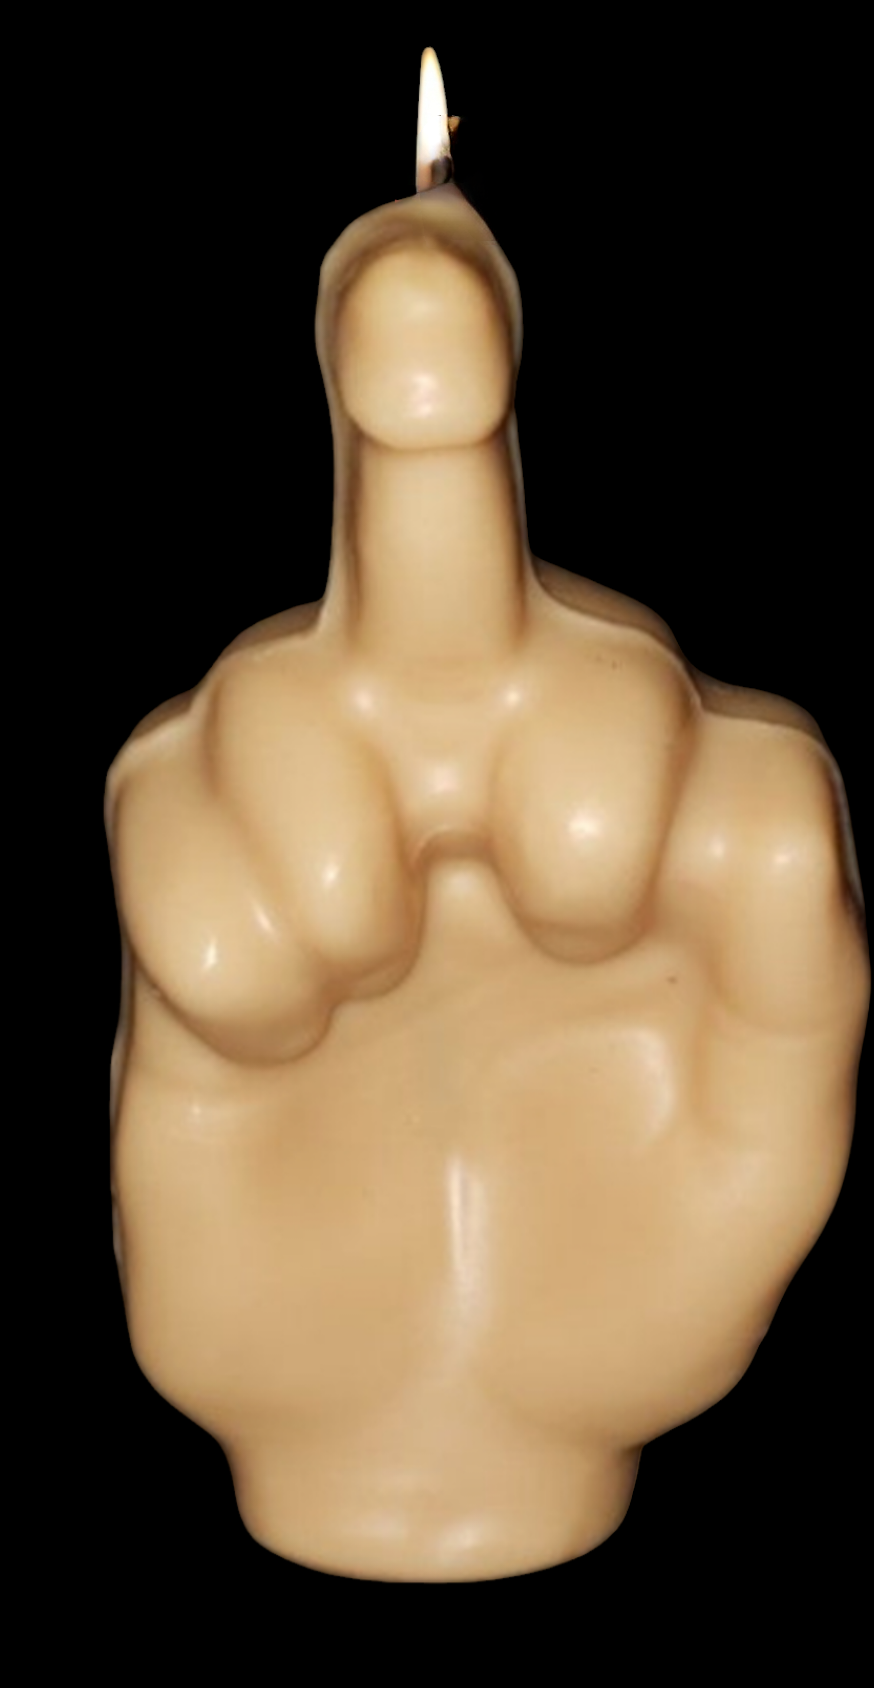 Penis Middle Finger